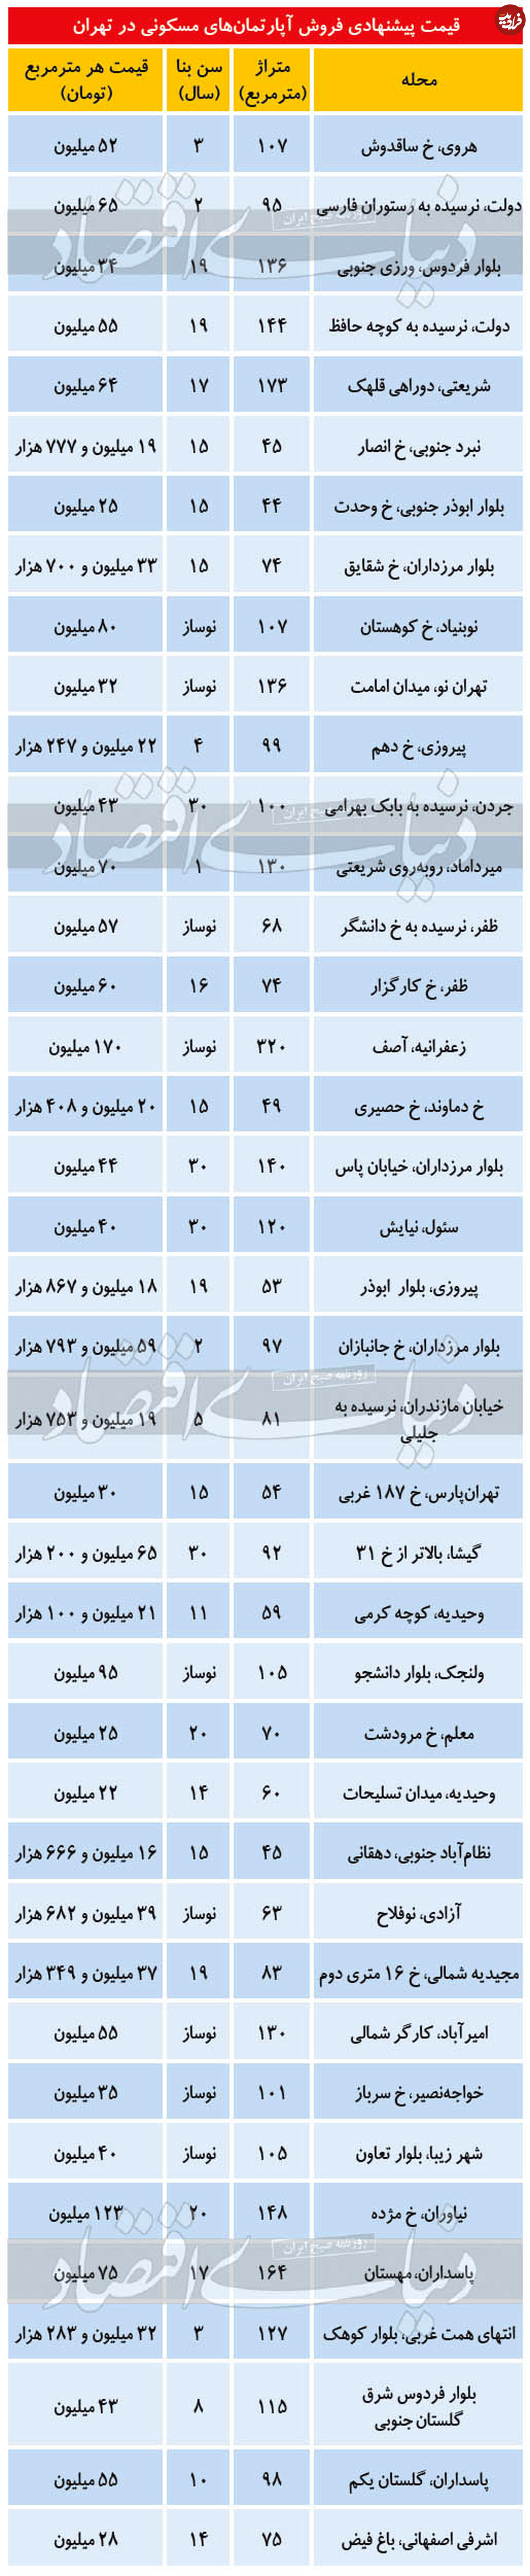 تصویر/ قیمت آپارتمان در مناطق مختلف تهران